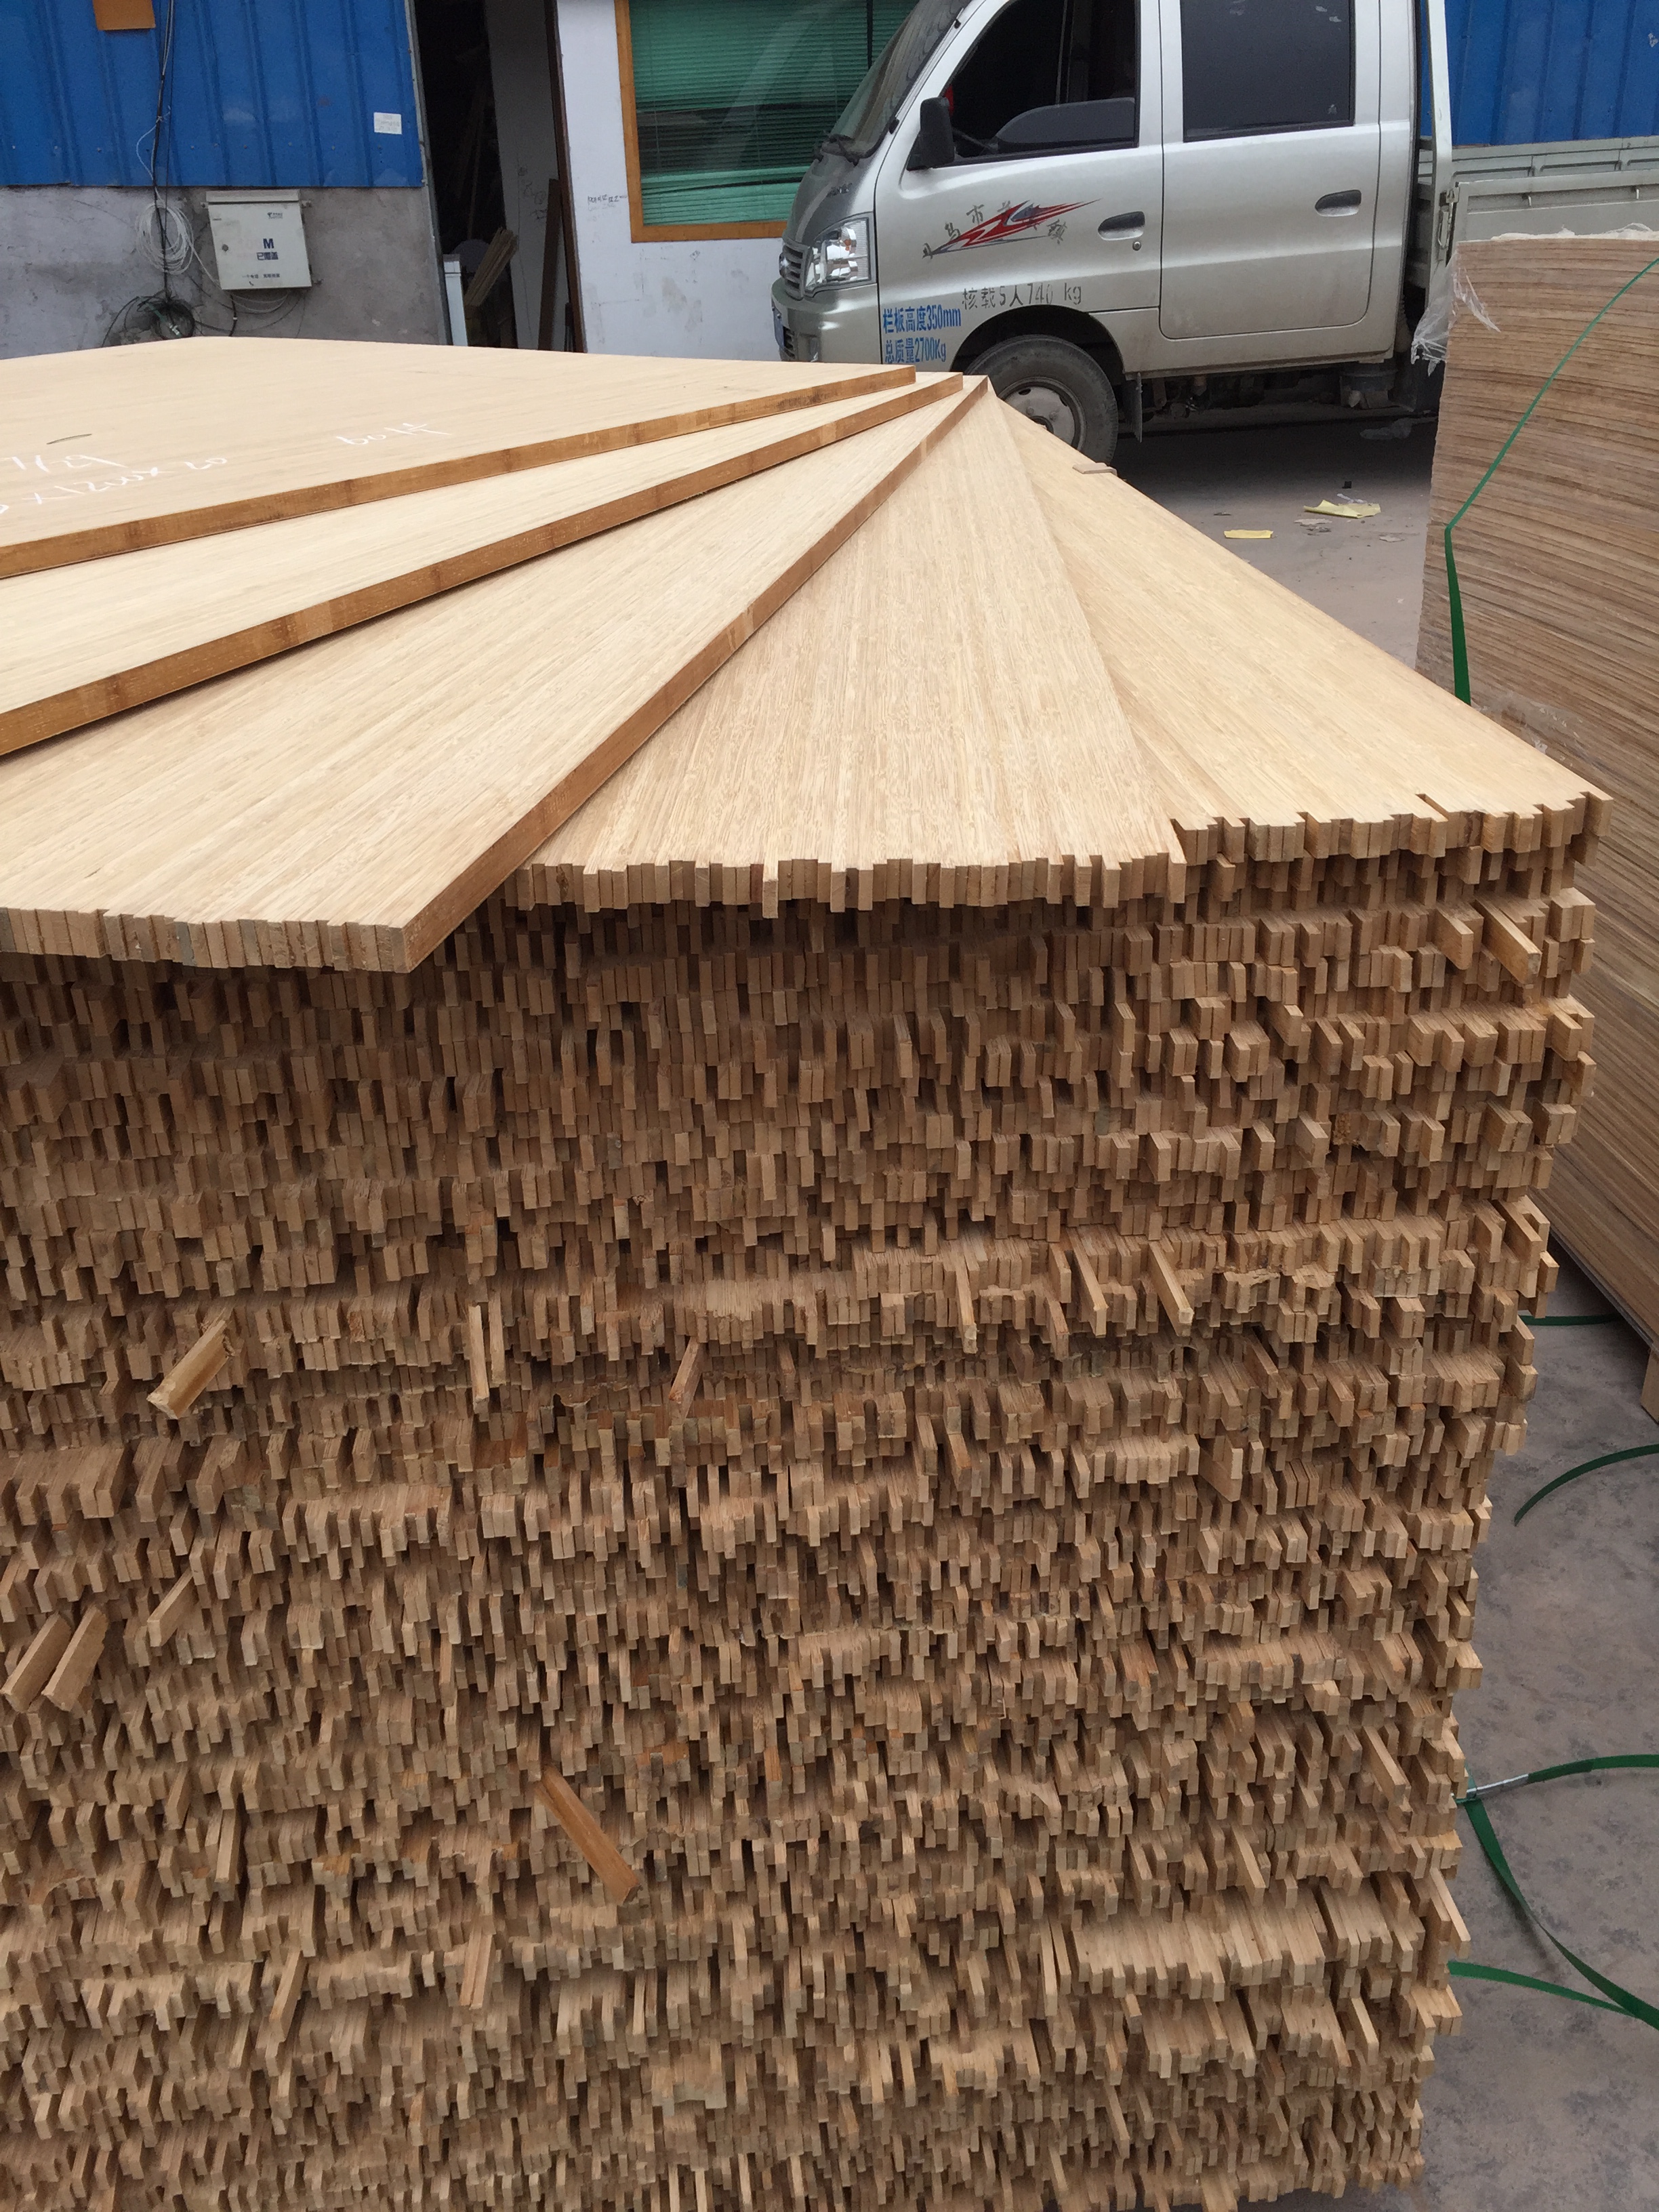 供应用于制作工艺品的用来竹工艺品，竹包装盒的竹板材